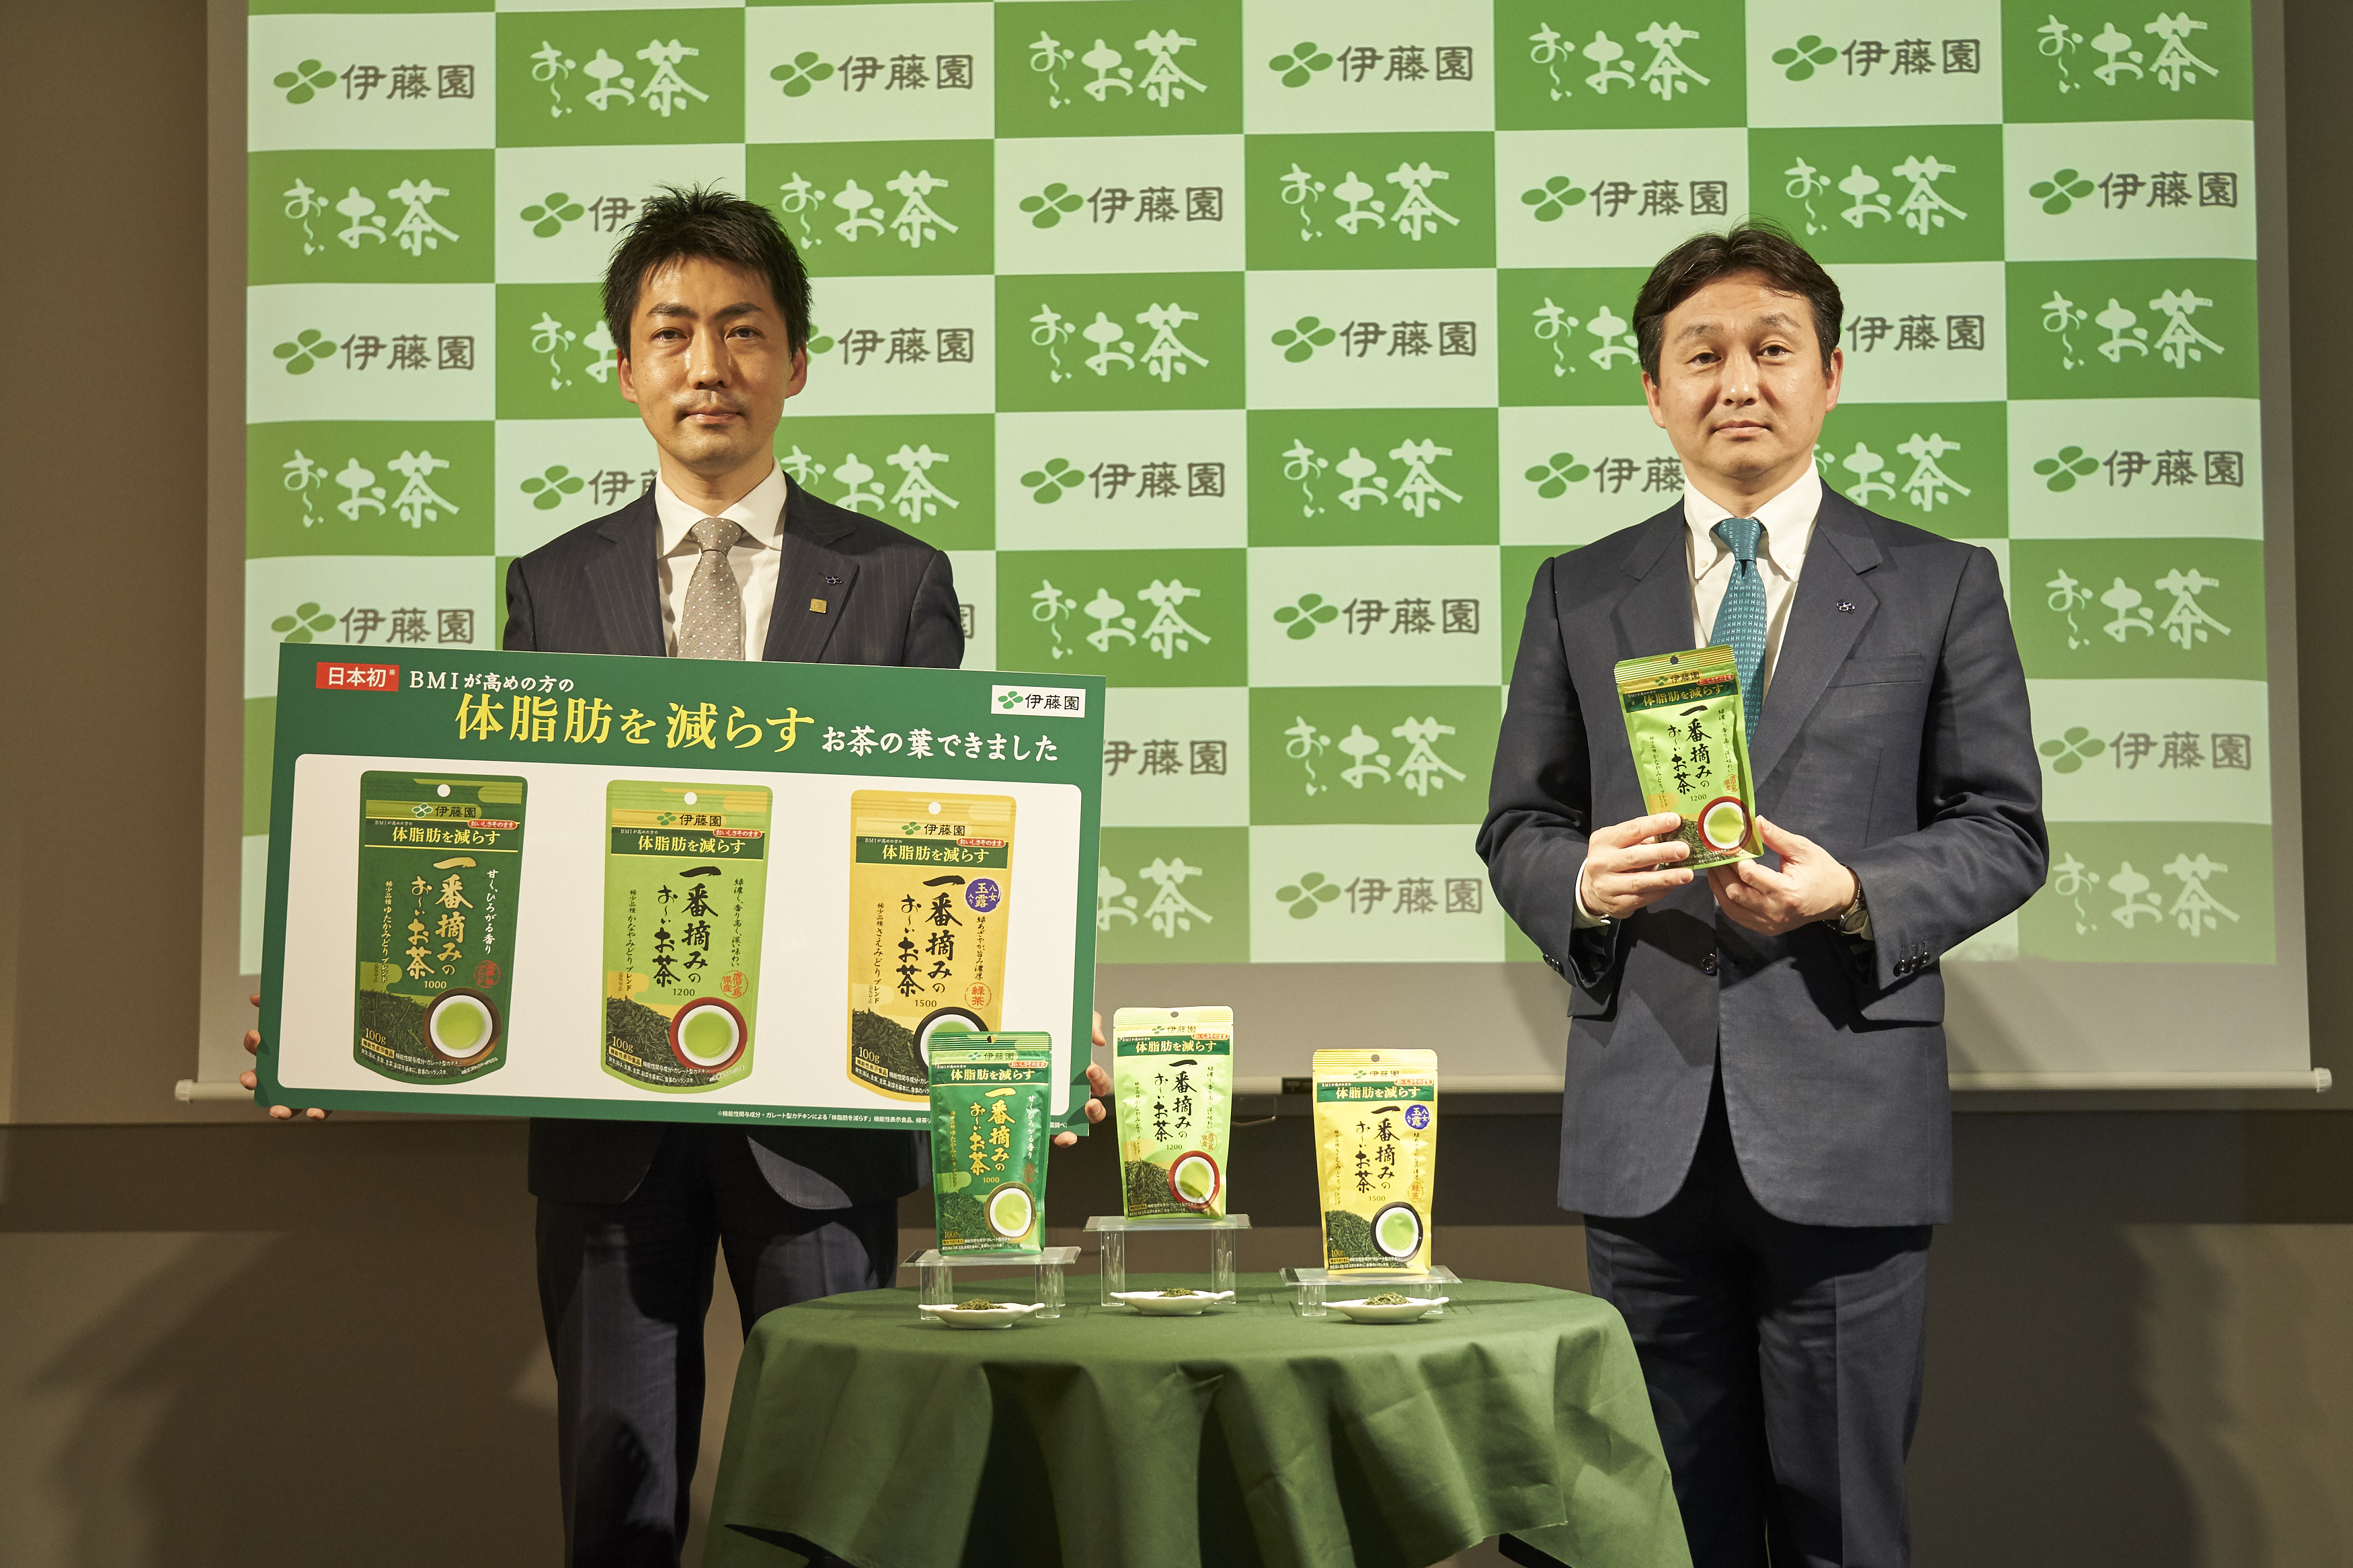 日本初※1 機能性表示食品の茶葉製品「一番摘みのお～いお茶」発表会